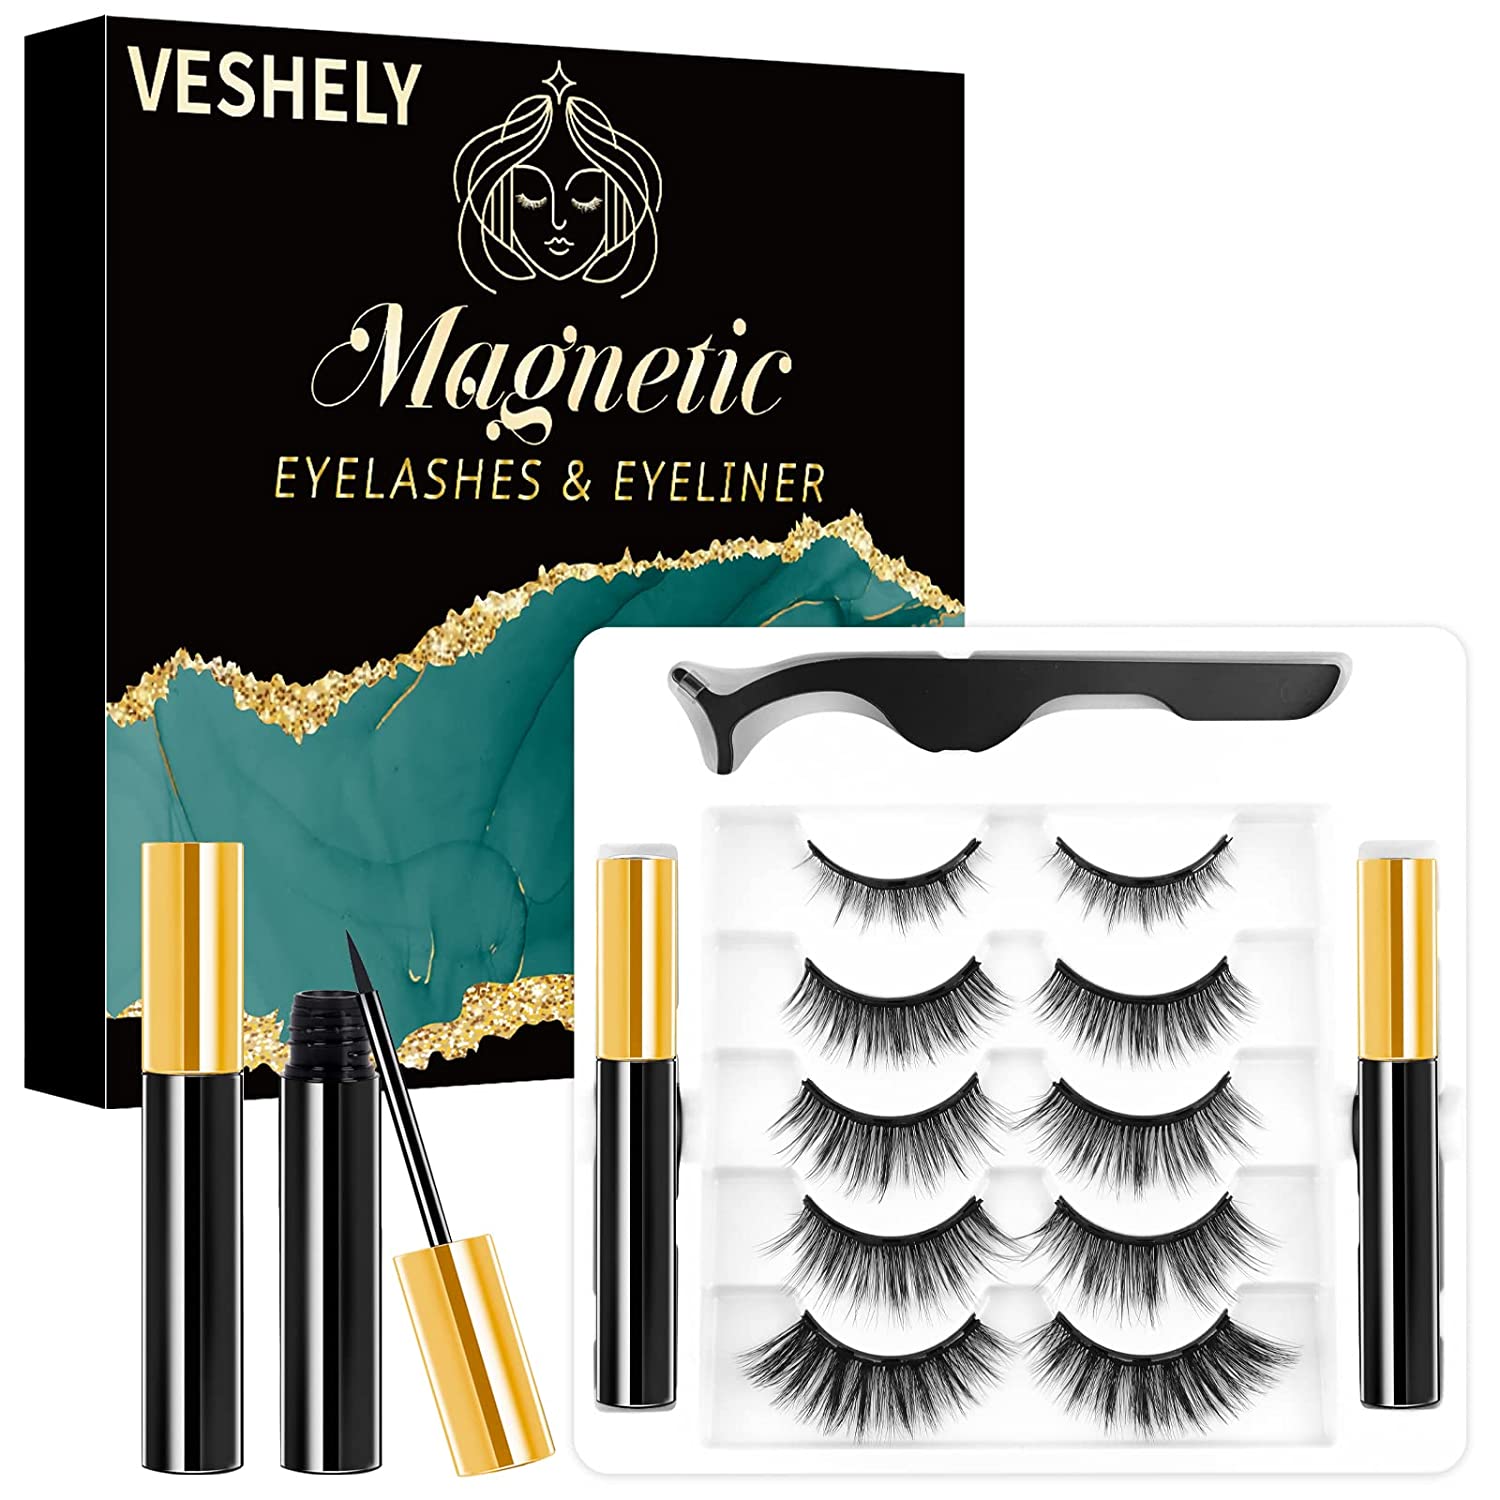 EYEKESHE Magnetic Eyelashes with Eyeliner Kit, 3D Natural Magnetic Eyelashes Set with Applicator and 2 Waterproof Magnetic Eyeliner (10 Pairs)